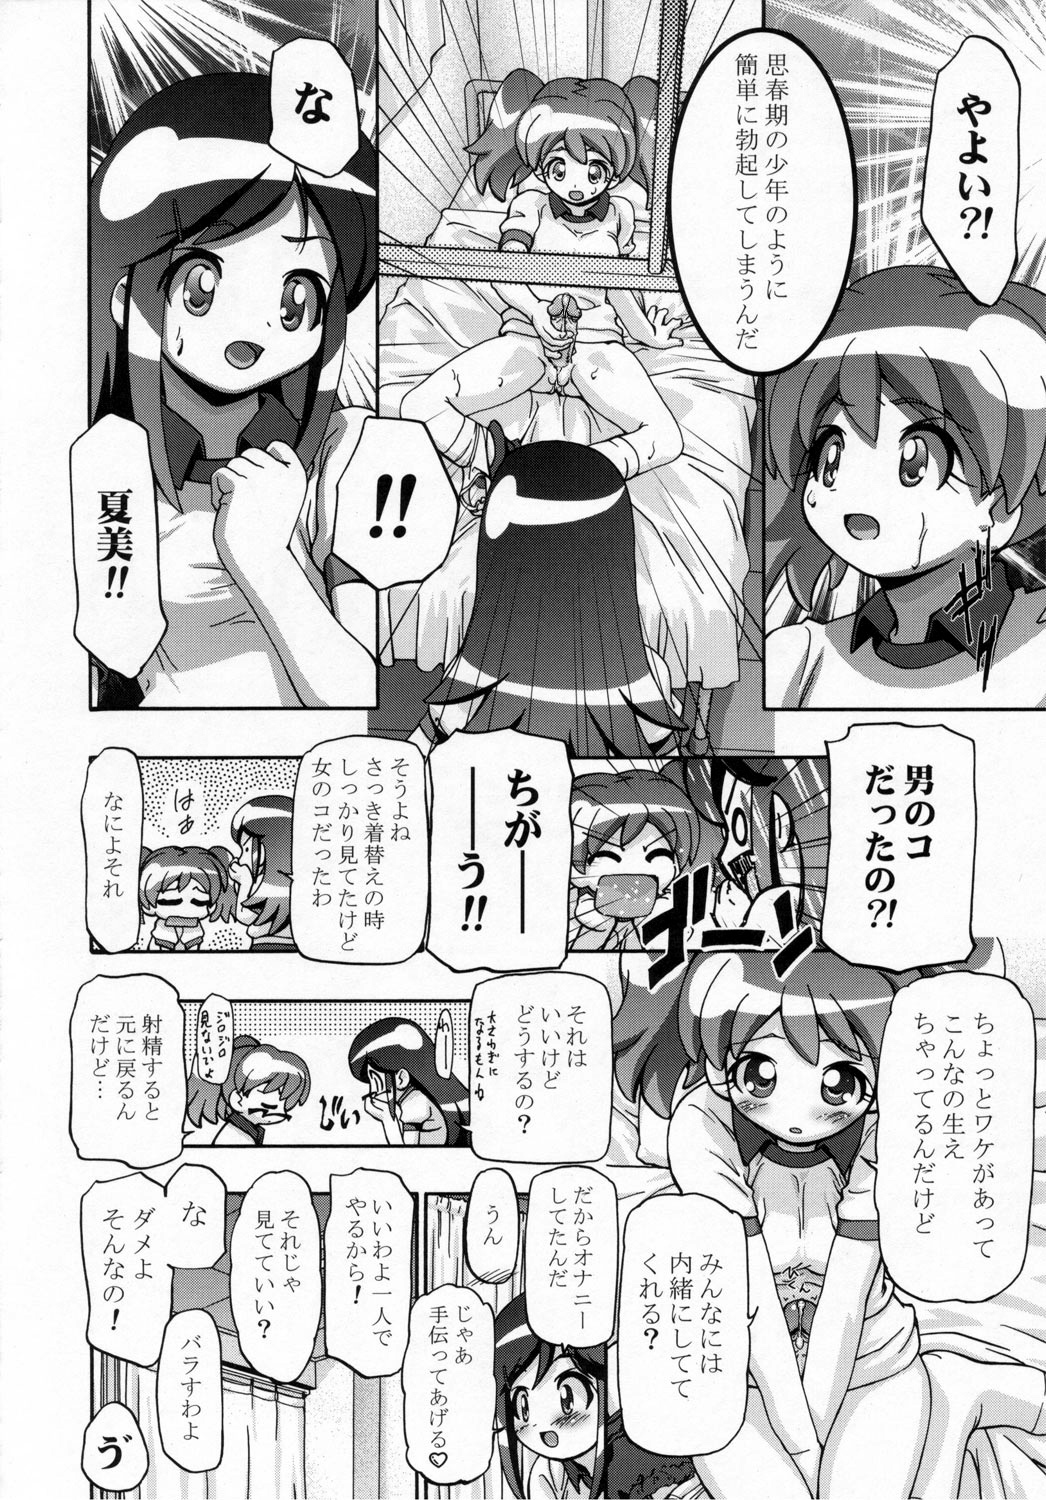 (SC31) [Gambler Club (Kousaka Jun)] Natsu Yuki - Summer Snow (Keroro Gunsou) page 17 full